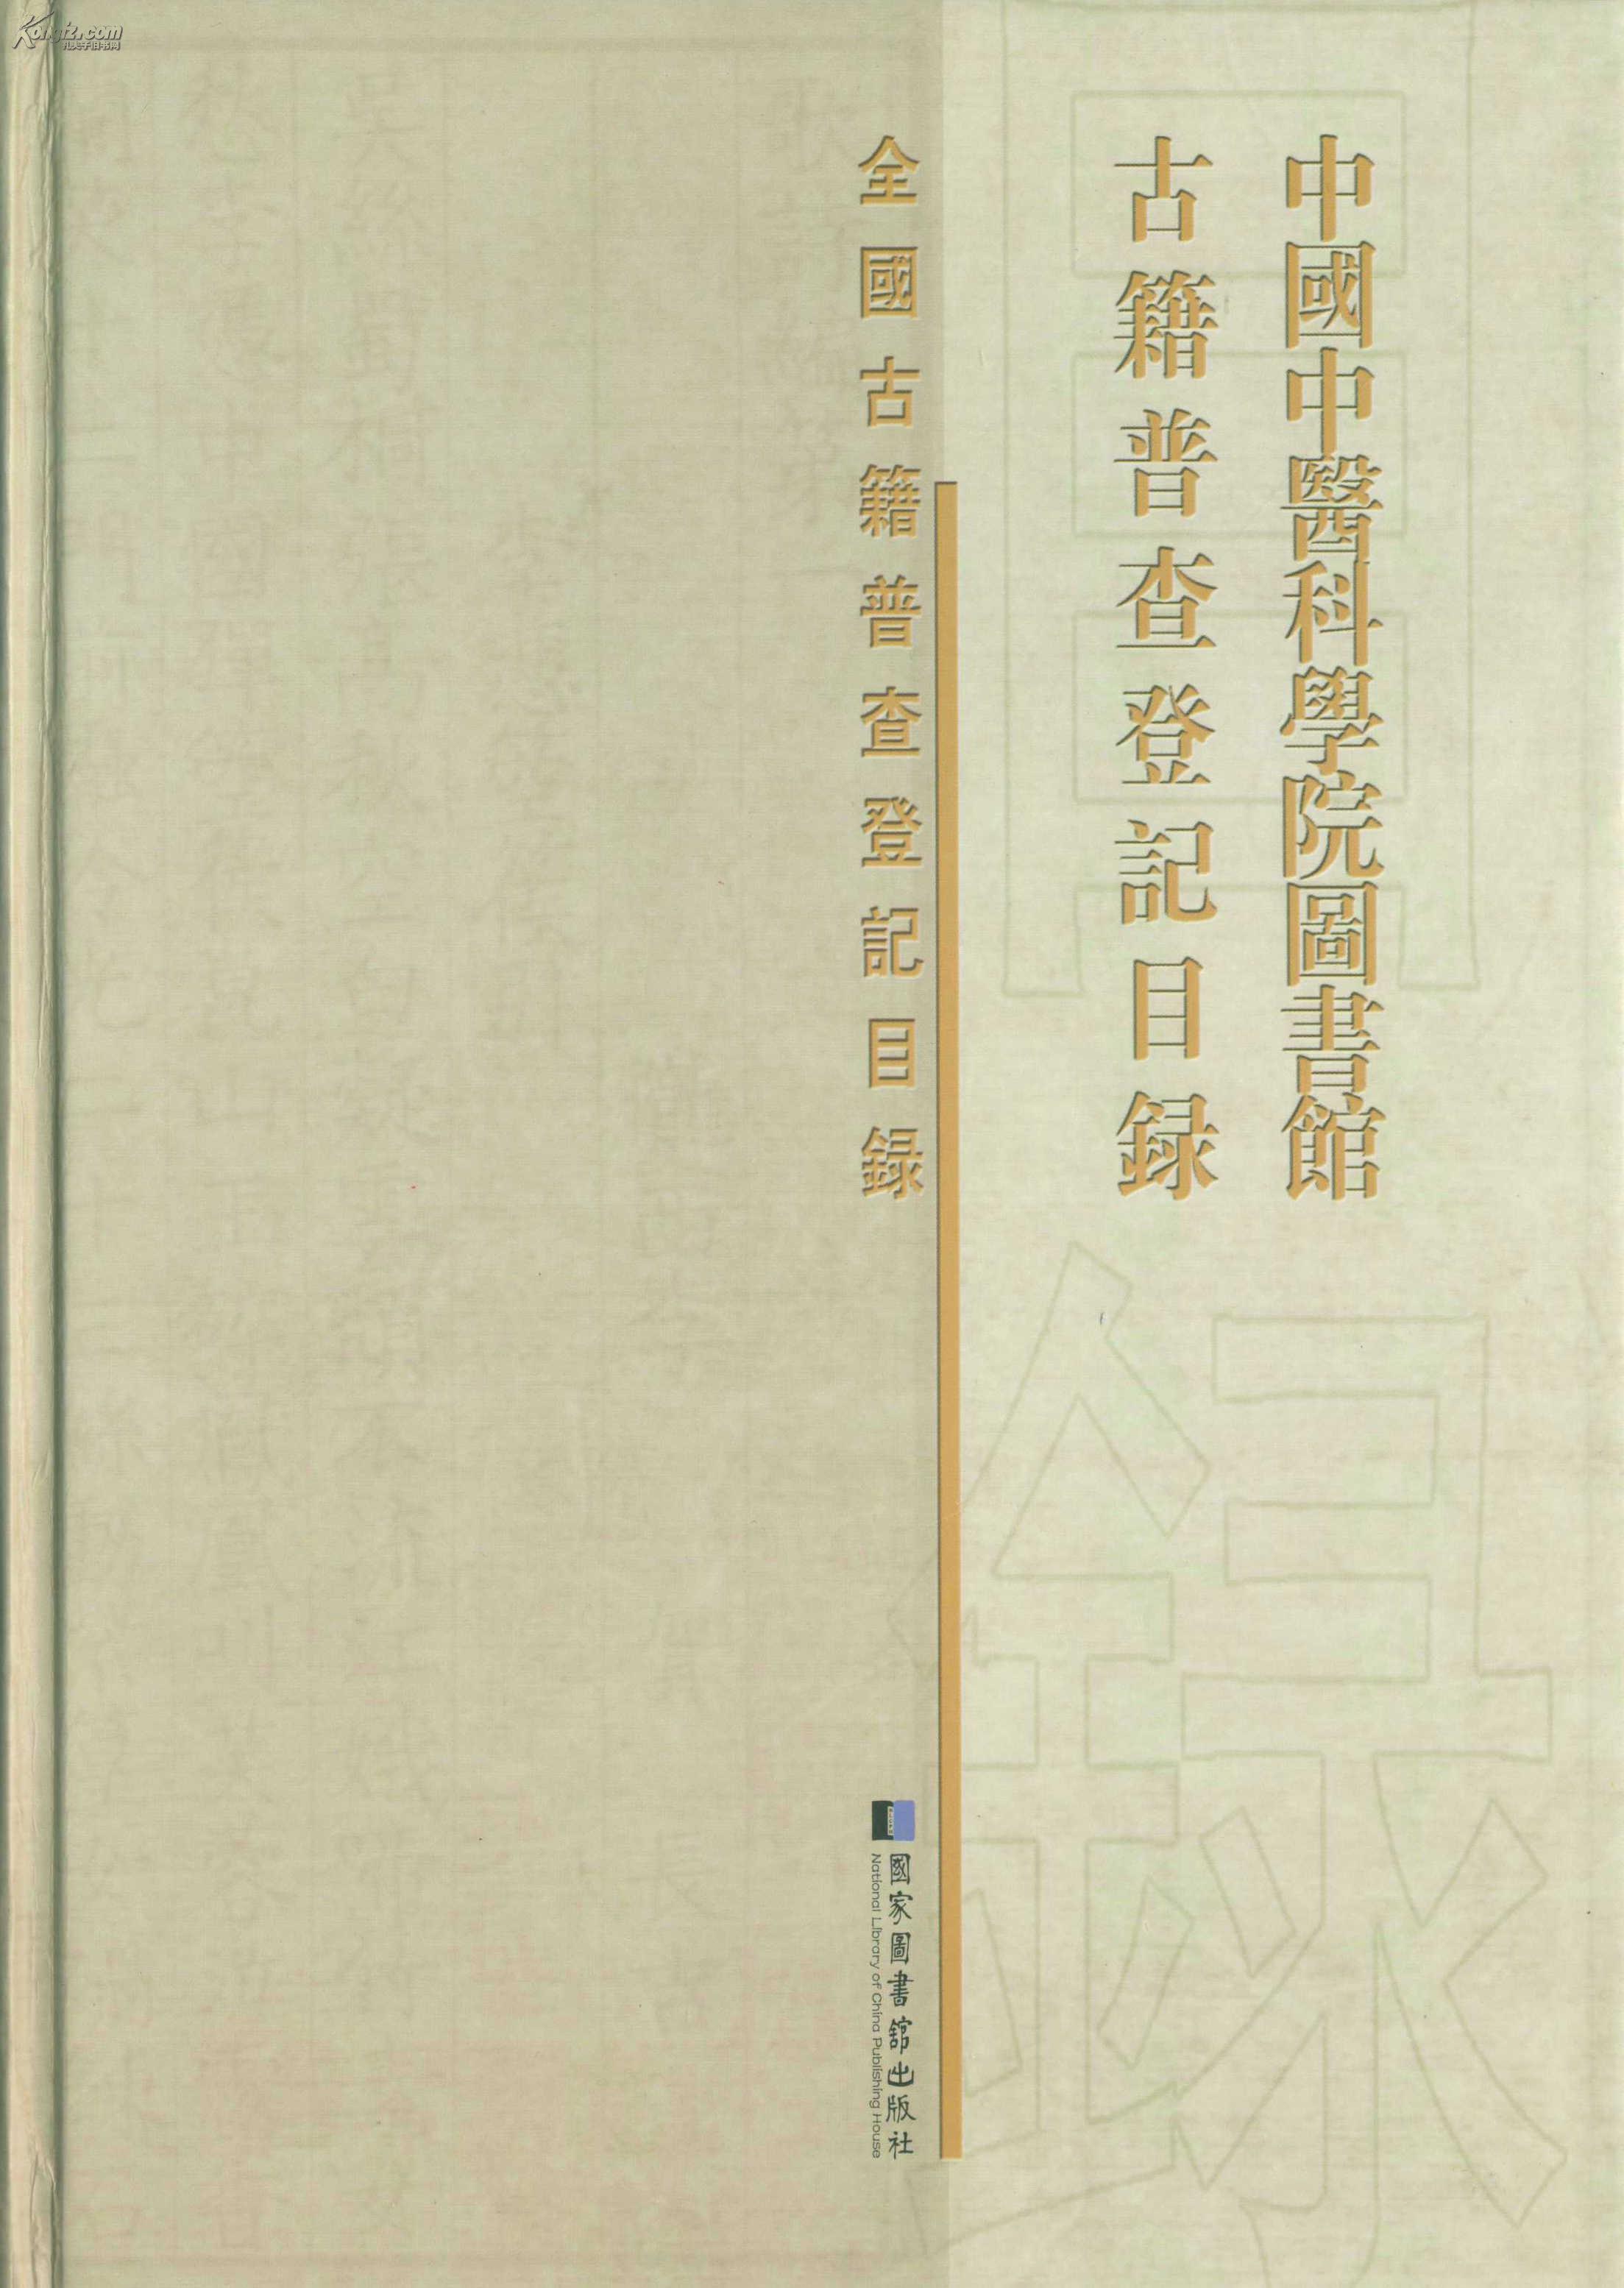 《中医古典目录学概论》：中医古籍分类法的基本原则